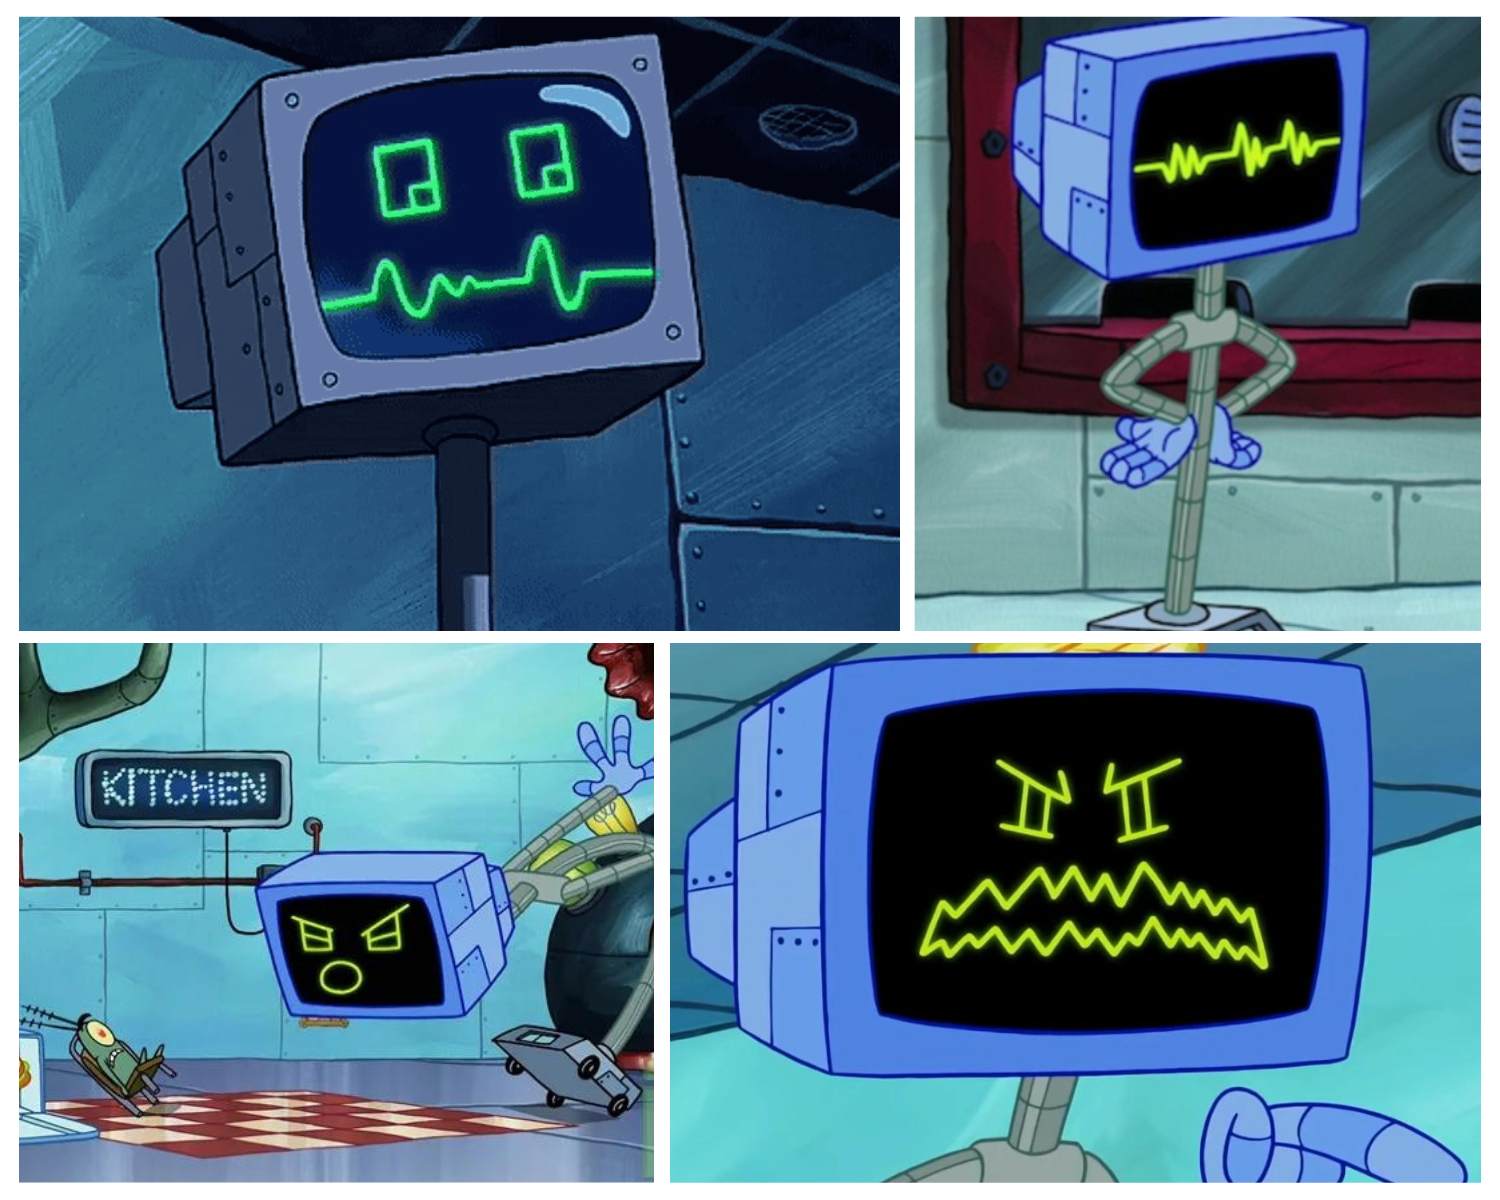 plankton karen spongebob squarepants characters